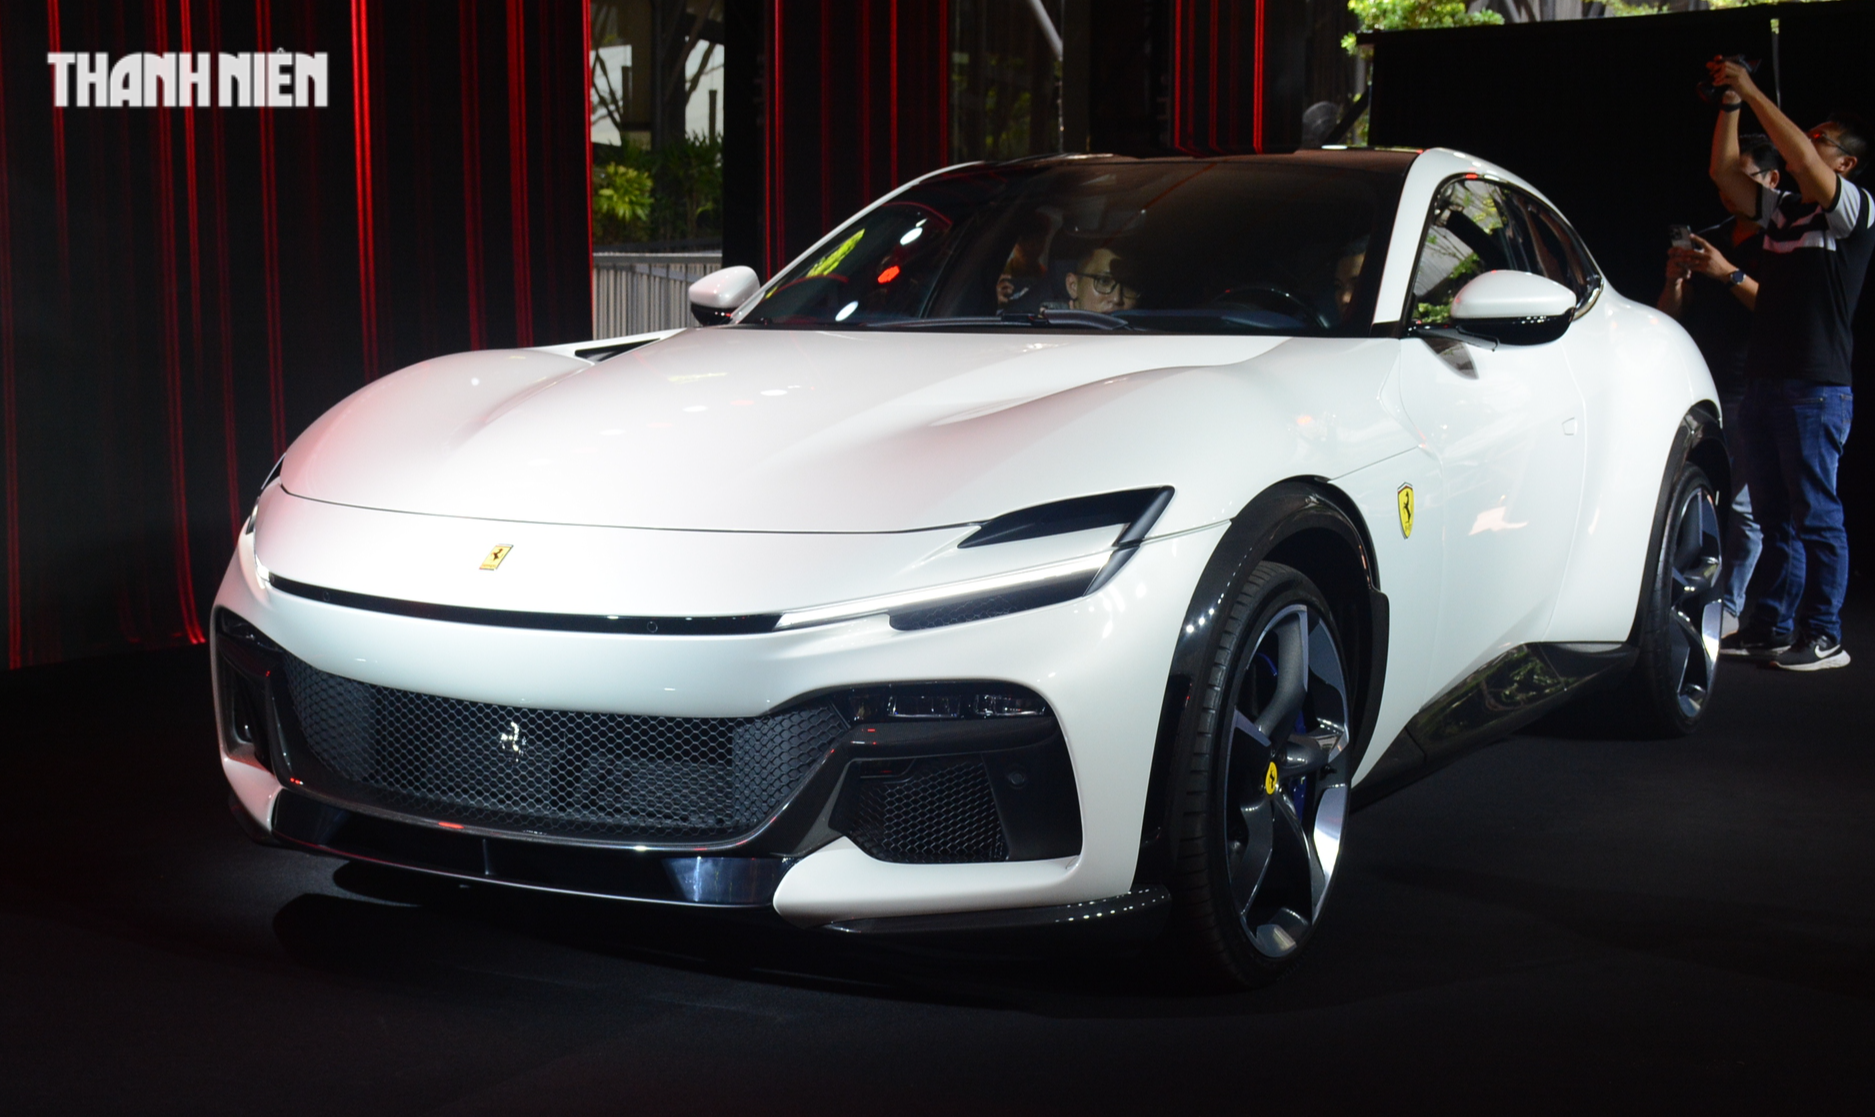 Siêu xe Ferrari gầm cao đầu tiên về Việt Nam, giá gần 40 tỉ đồng - Ảnh 2.